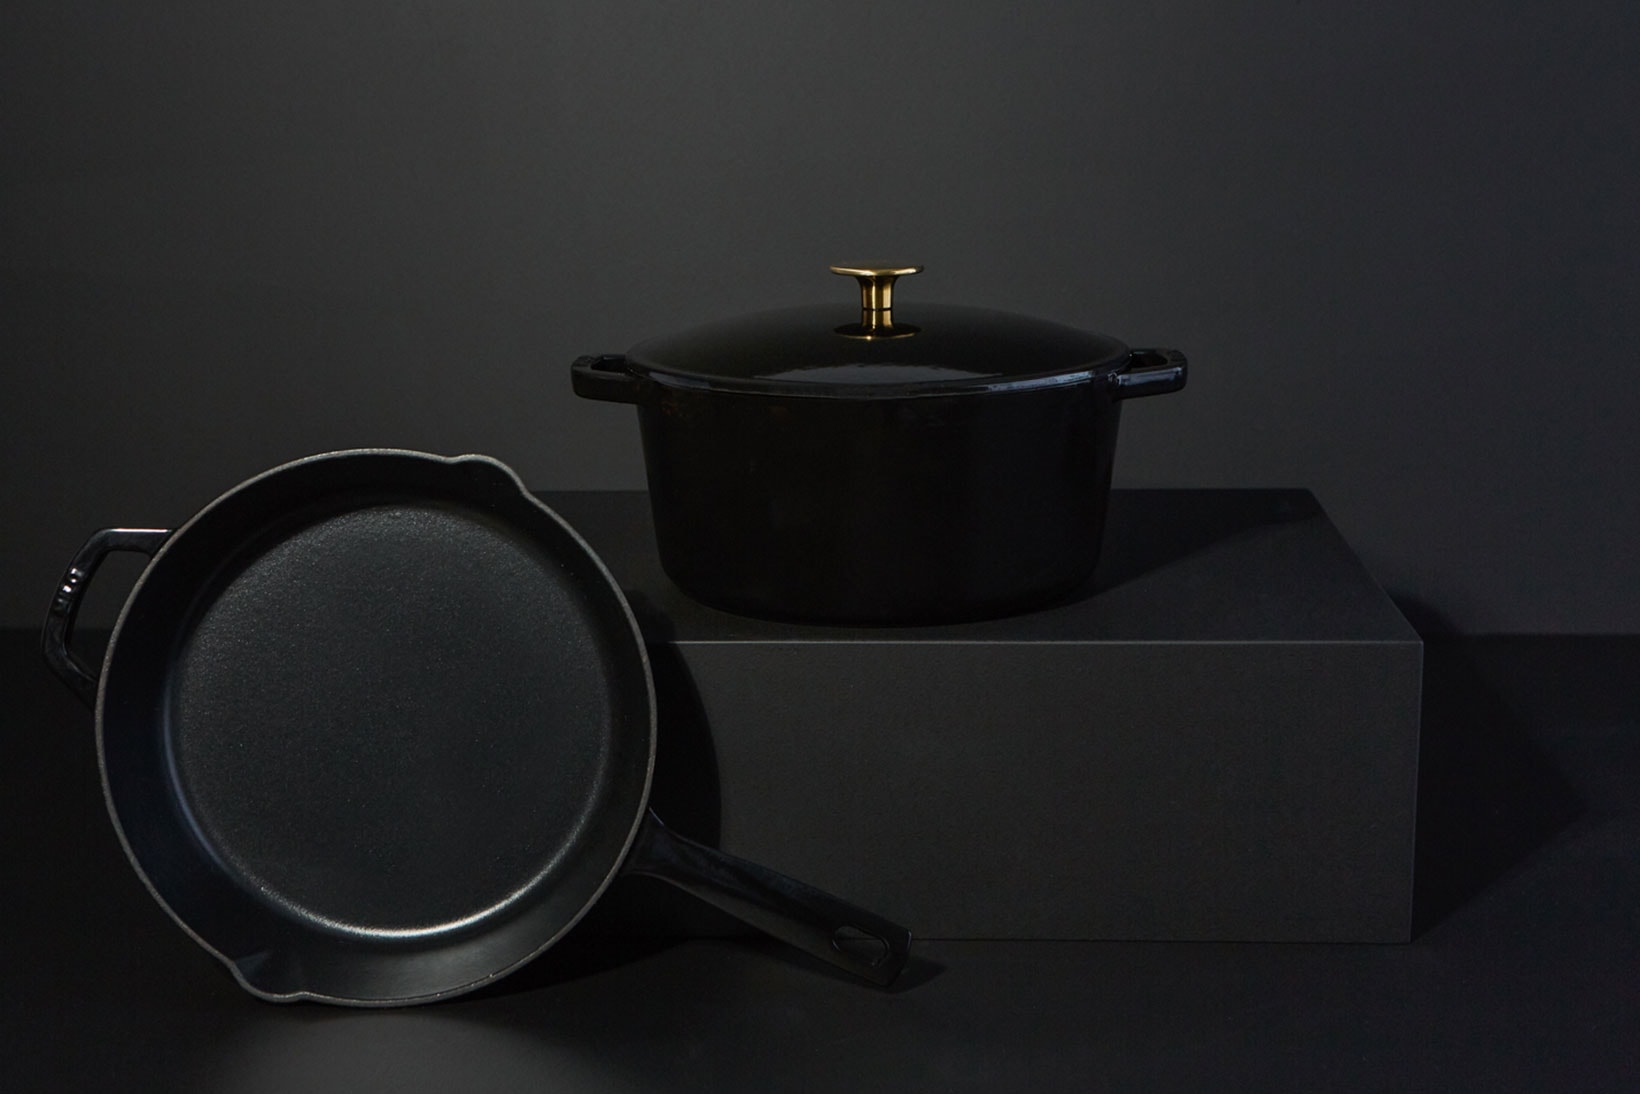 milo cookware kitchen cast iron pants pots new colorways black